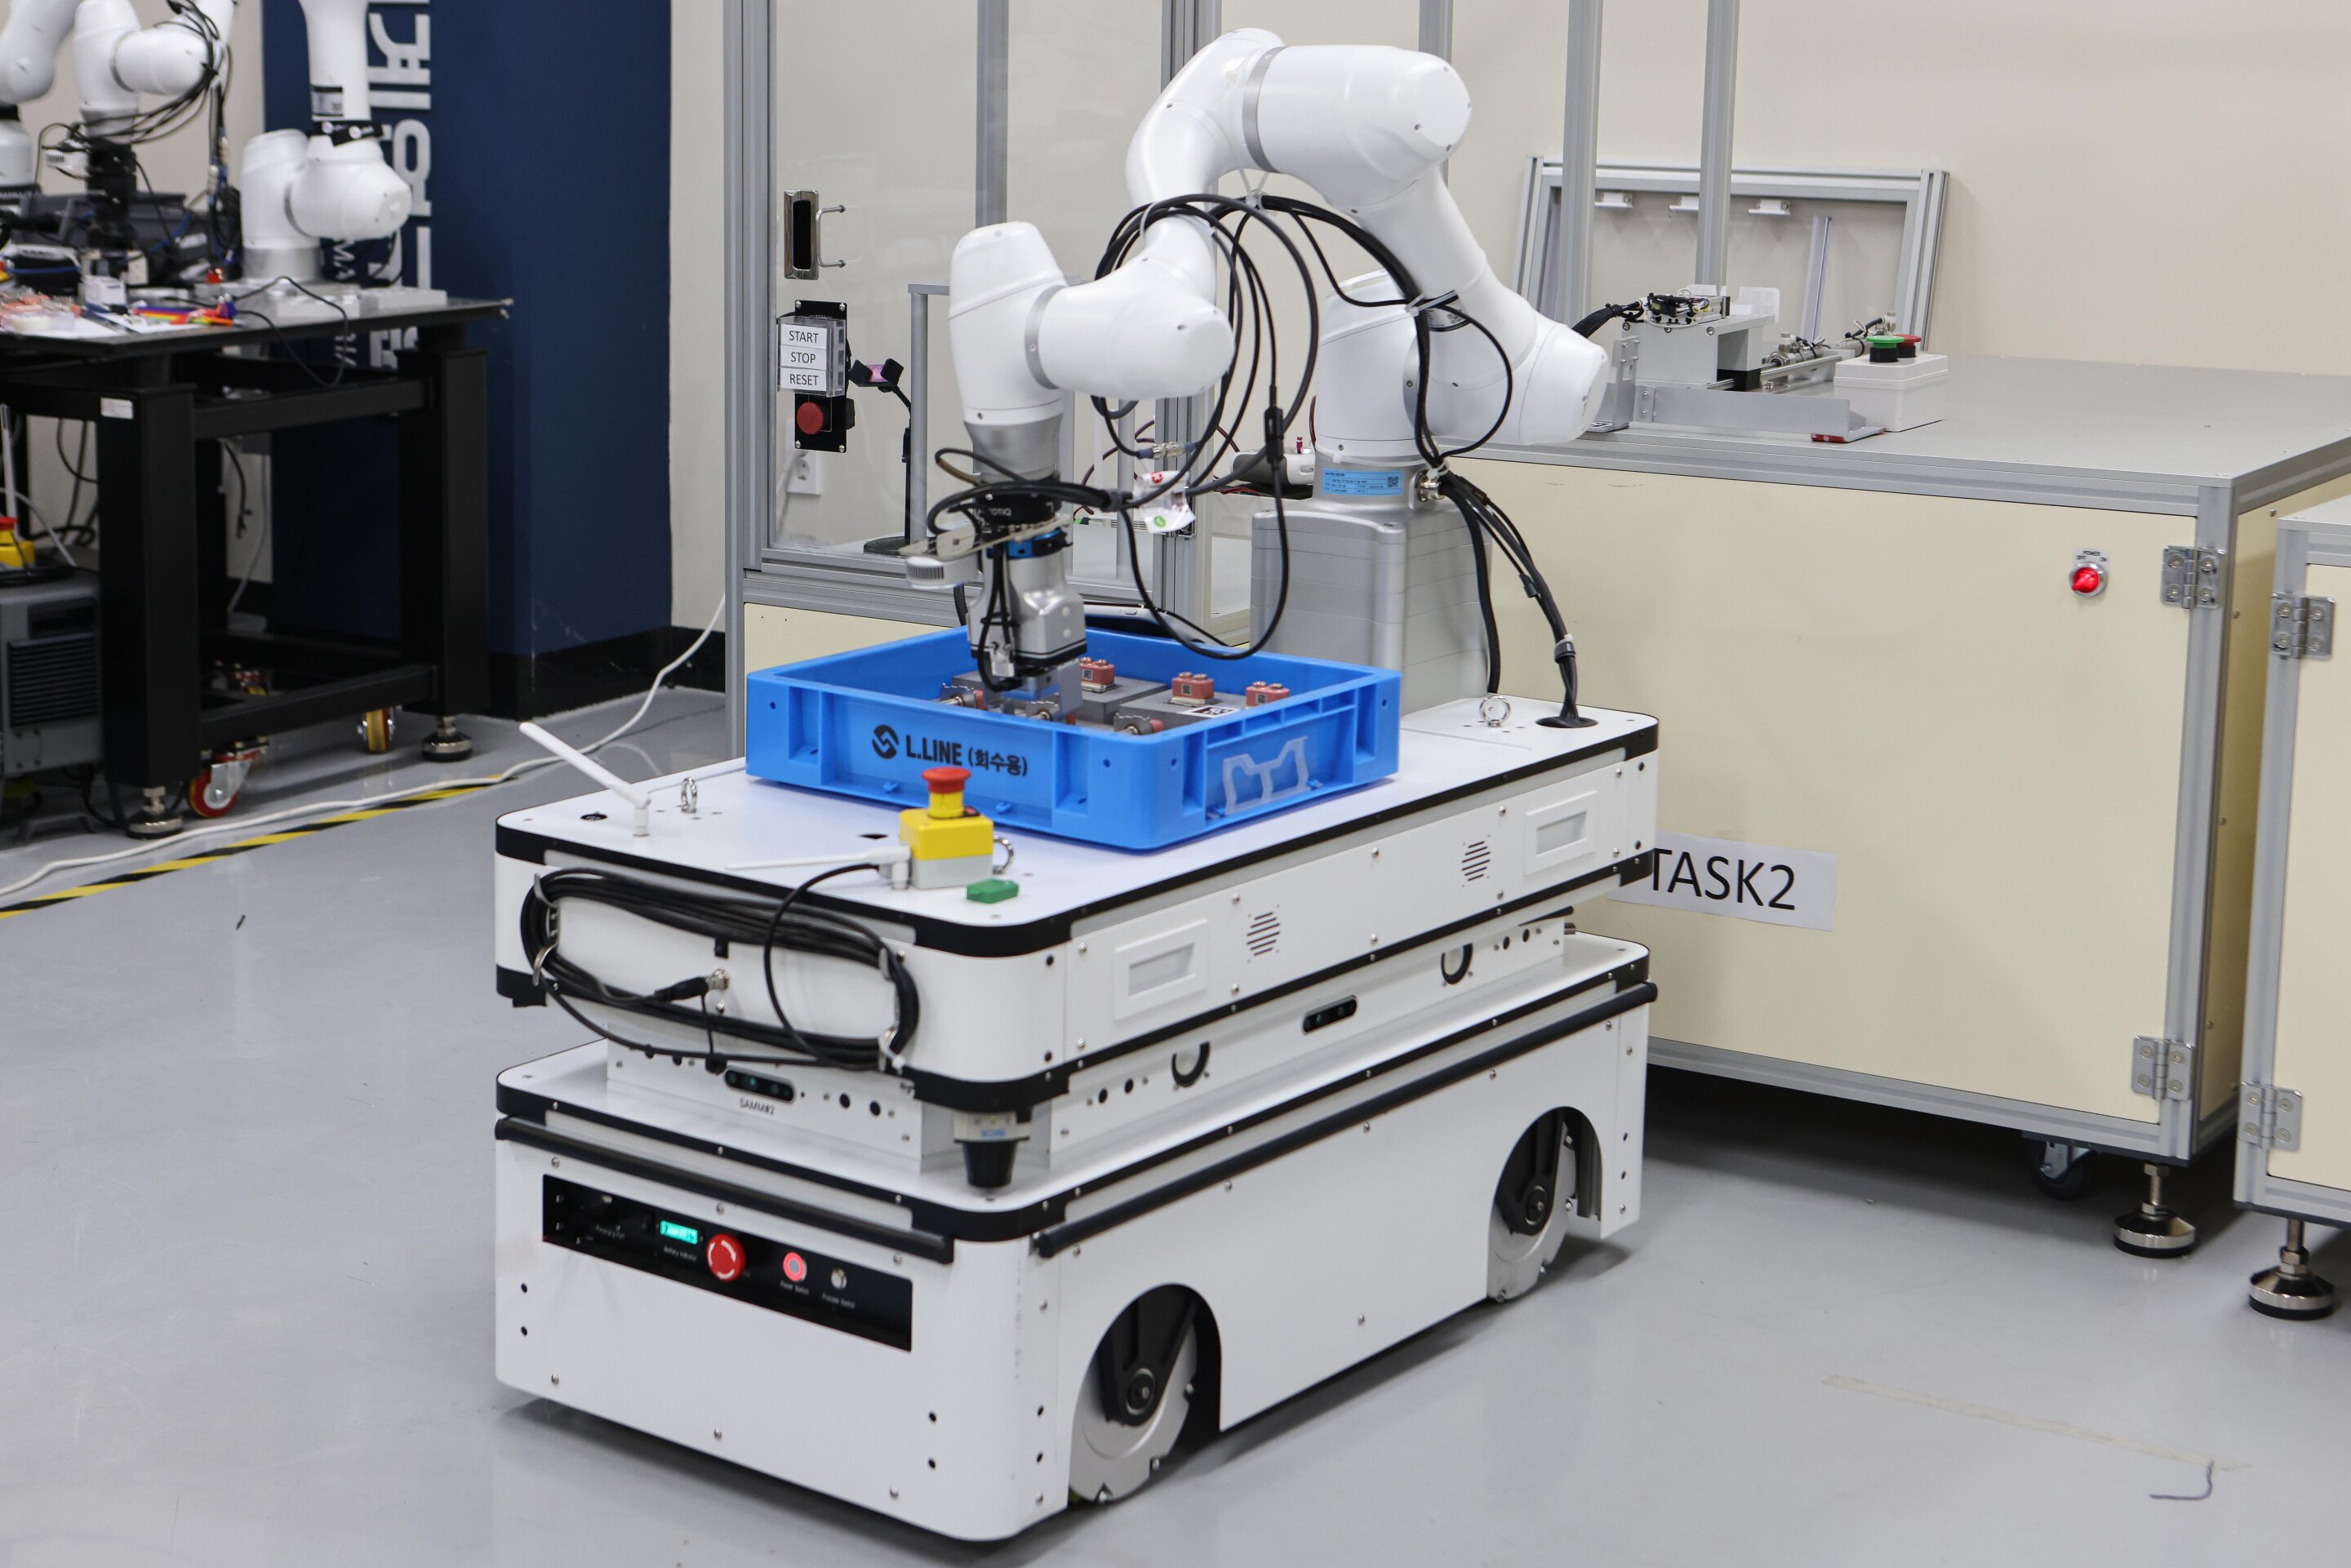 Zespół z Korei opracował sztuczną inteligencję do sterowania robotami przemysłowymi